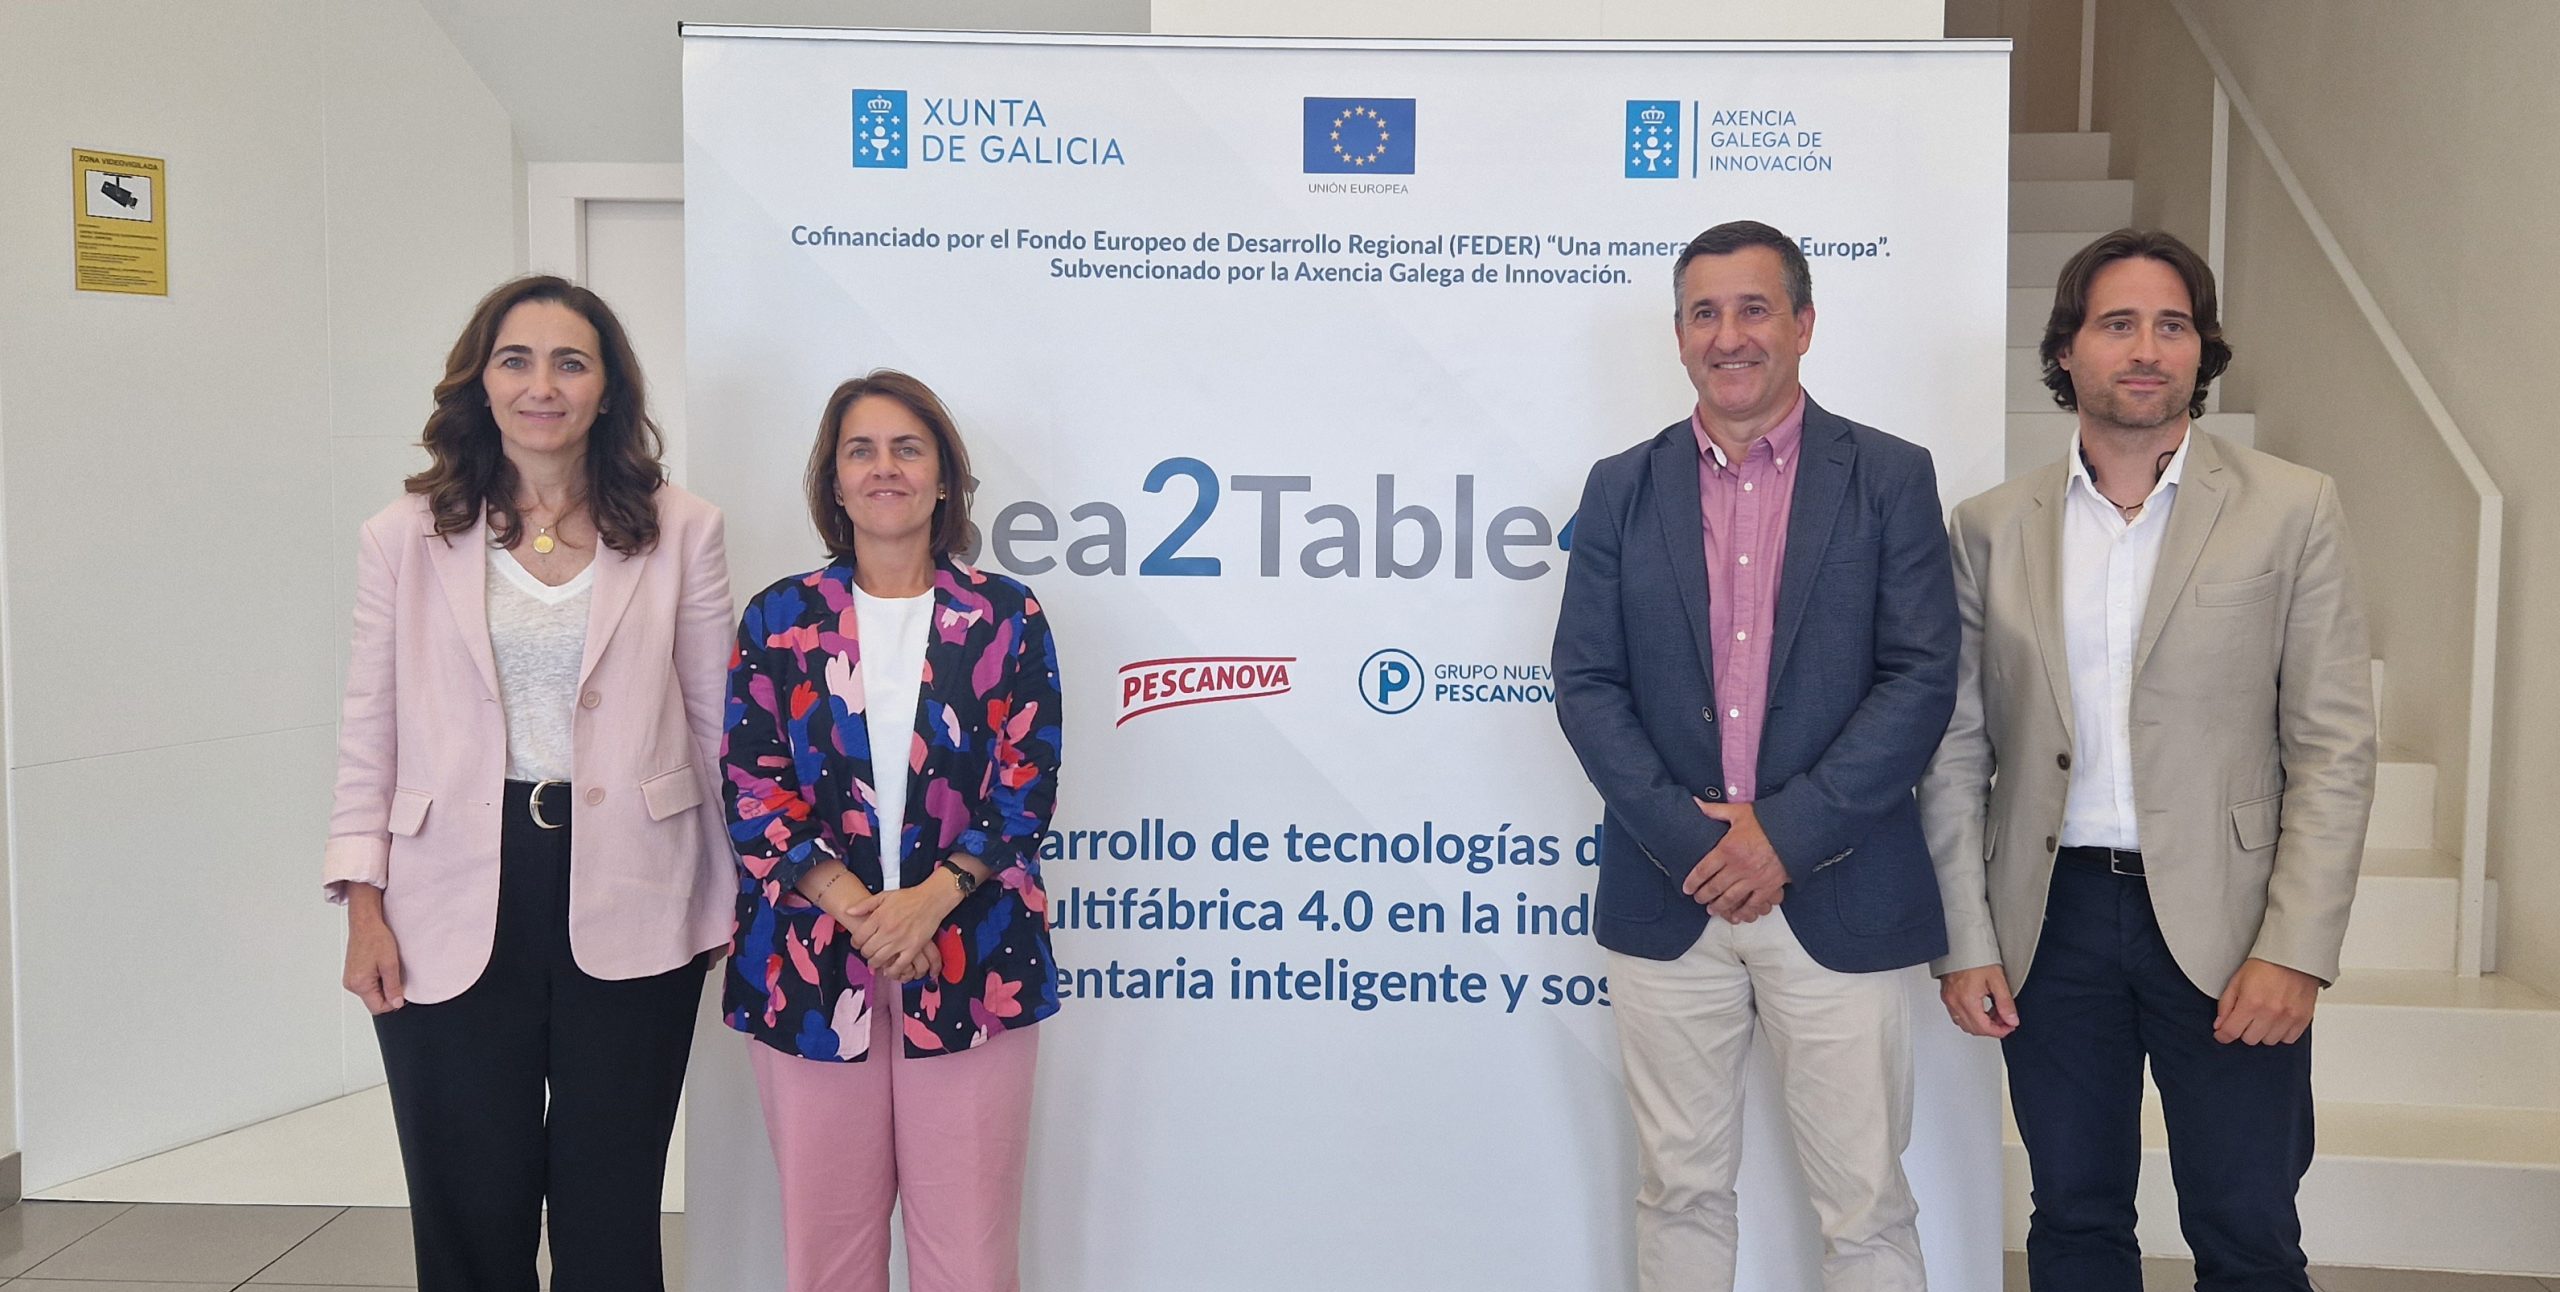 El Grupo Nueva Pescanova incorpora la inteligencia artificial en sus fábricas de Galicia con el proyecto Sea2Table4.0